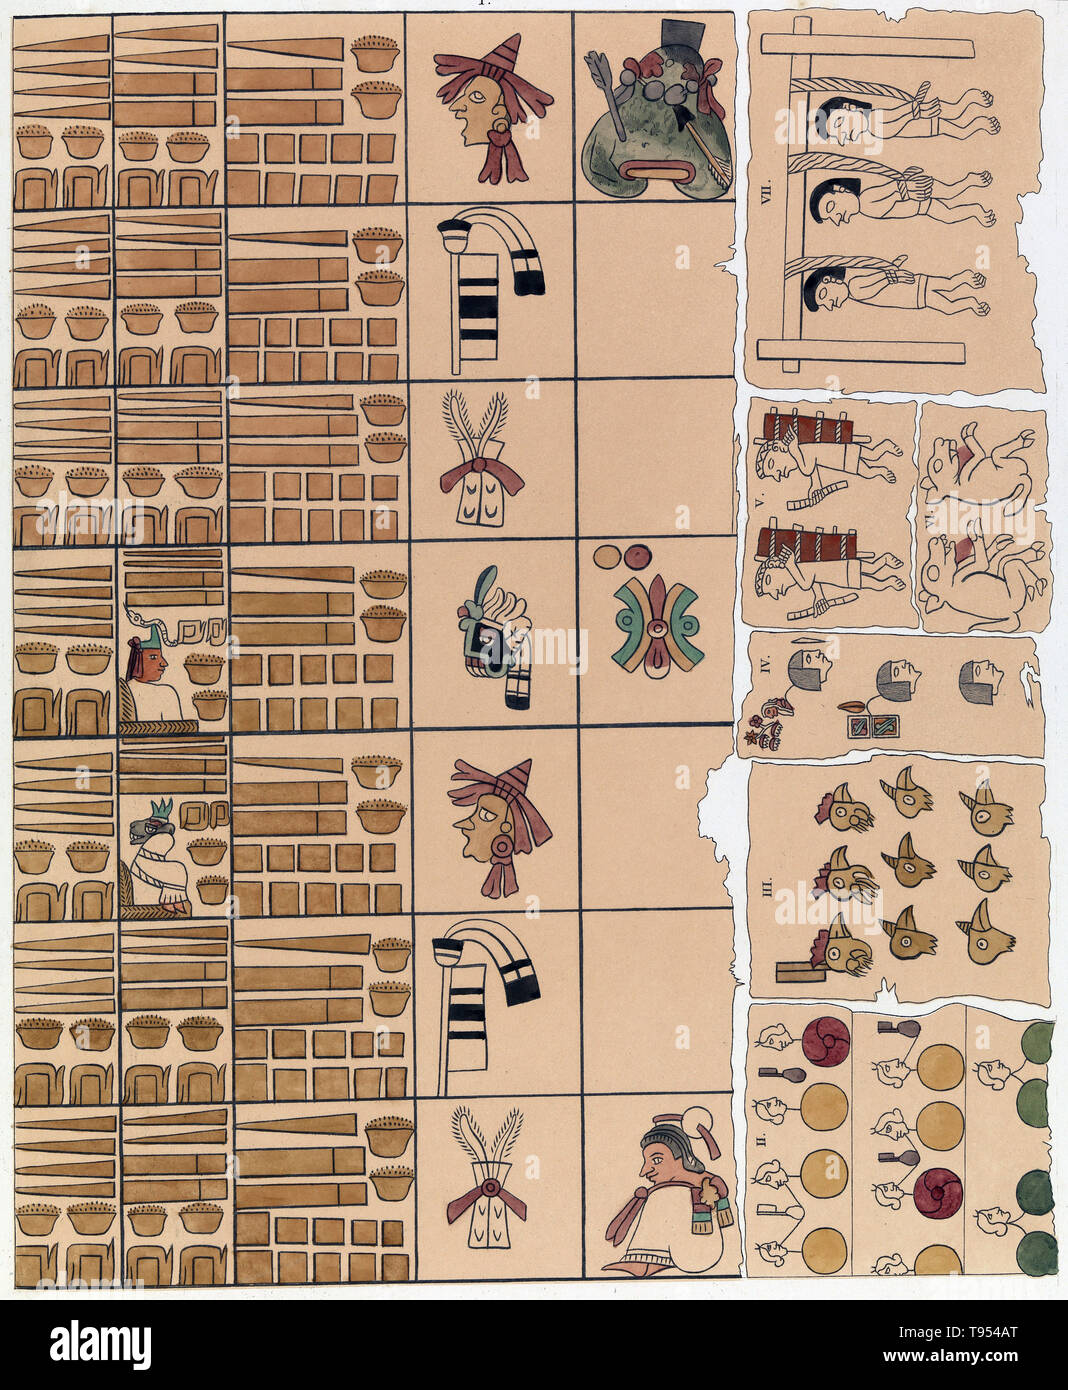 Azteca es una escritura pictográfica ideográfica y sistema de escritura precolombina con algunos signos silábicos y logograms. Cultura azteca, también conocida como la cultura mexica, era una cultura mesoamericana que floreció en la zona central de México en el periodo post-clásico de 1300 a 1521. La mayoría de los códices aztecas fueron quemados por tlatoani azteca (emperadores) por razones ideológicas o por curas españoles después de la conquista de Mesoamérica. Resto de códices aztecas como el Codex Mendoza, Codex Borbonicus, y Codex Osuna fueron escritos en el venado ocultar y fibra vegetal. Foto de stock